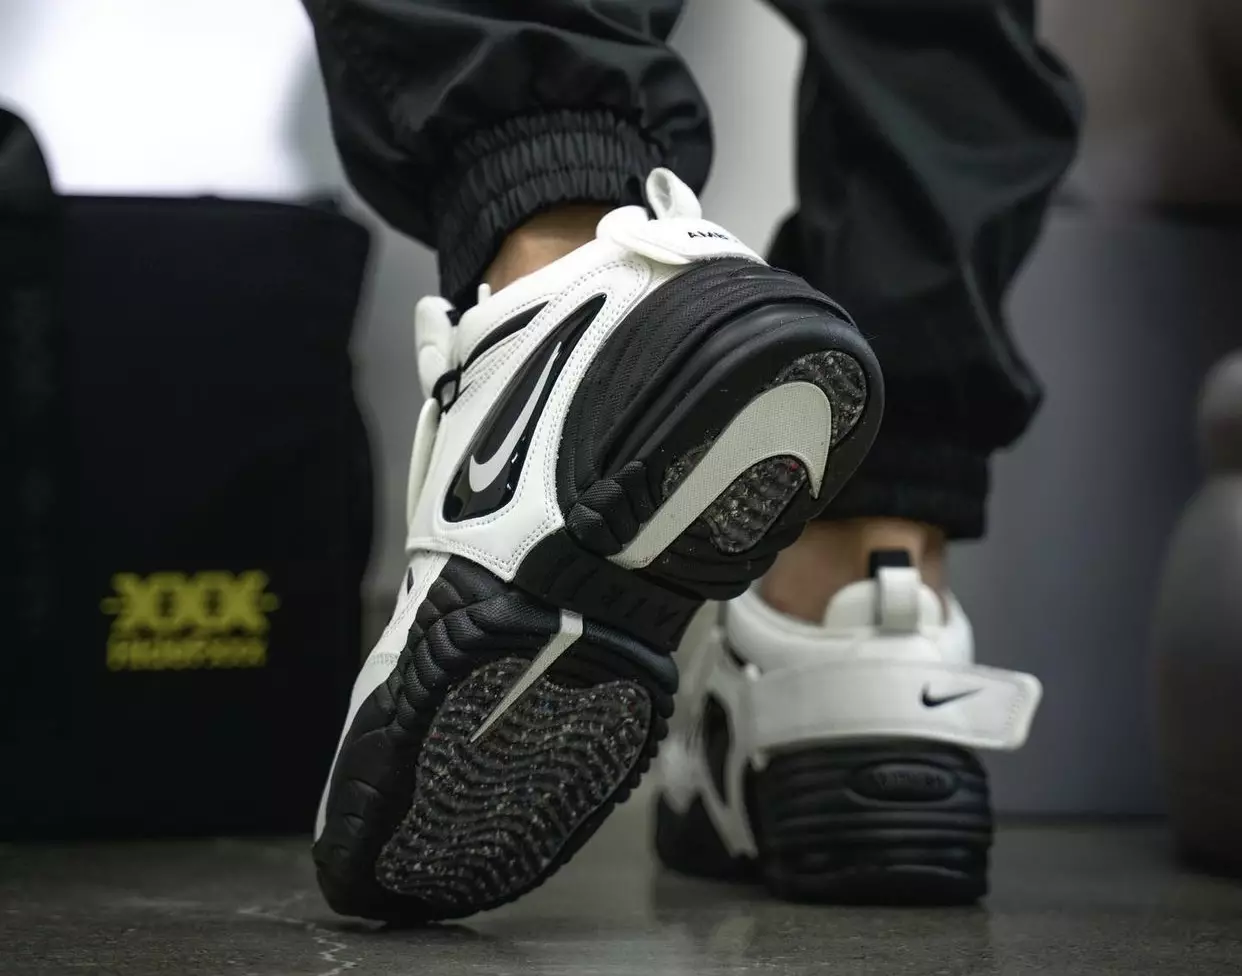 AMBUSH Nike Air Adjust Force Blanco Negro On-Feet